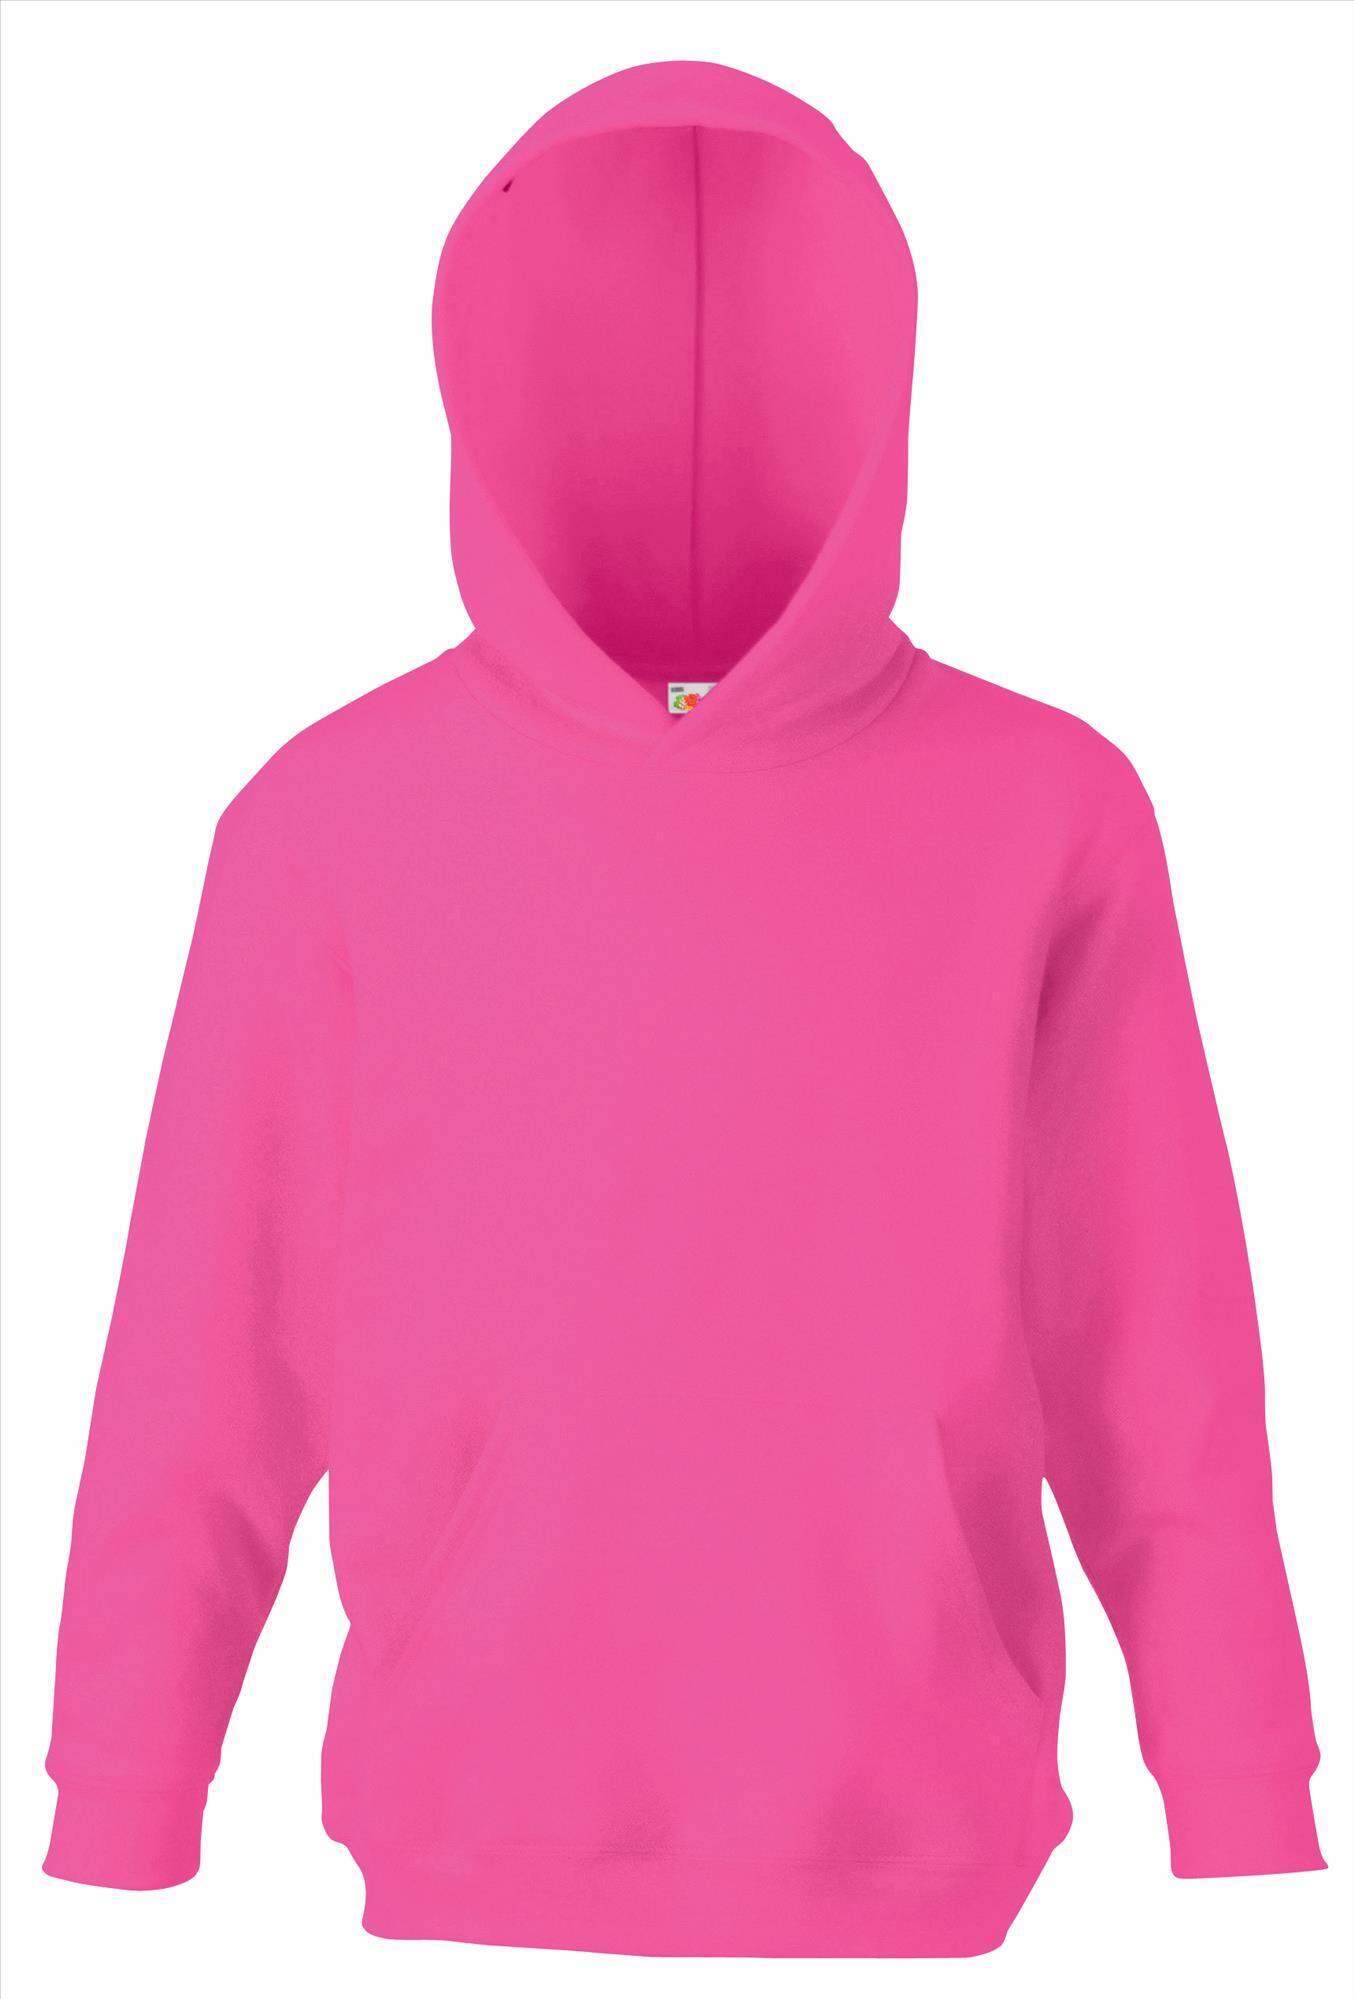 Fuchsia roze Kinder hoodie sweater met gevoerde capuchon